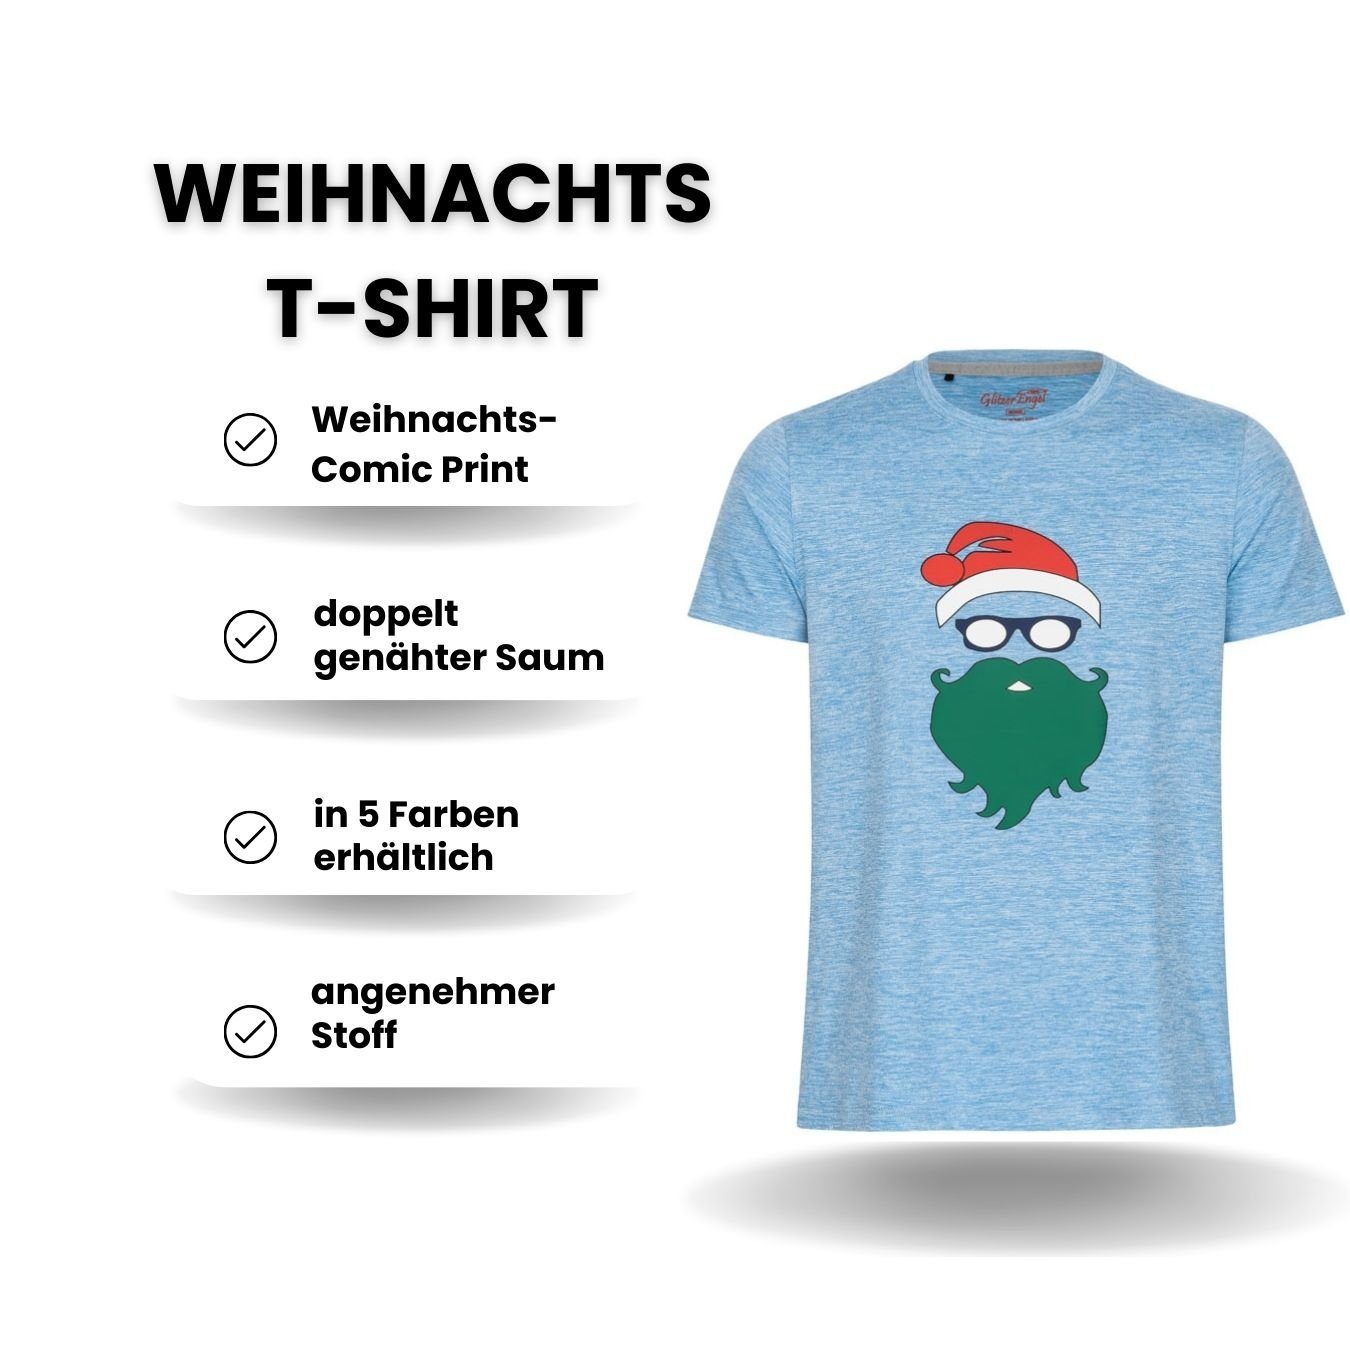 Weihnachtsfeier, Berlinsel Weihnachtsgeschenk, Weihnachtsfoto blau Herren Printshirt Weihnachtsshirt Weihnachtsoutfit T-Shirt Männer